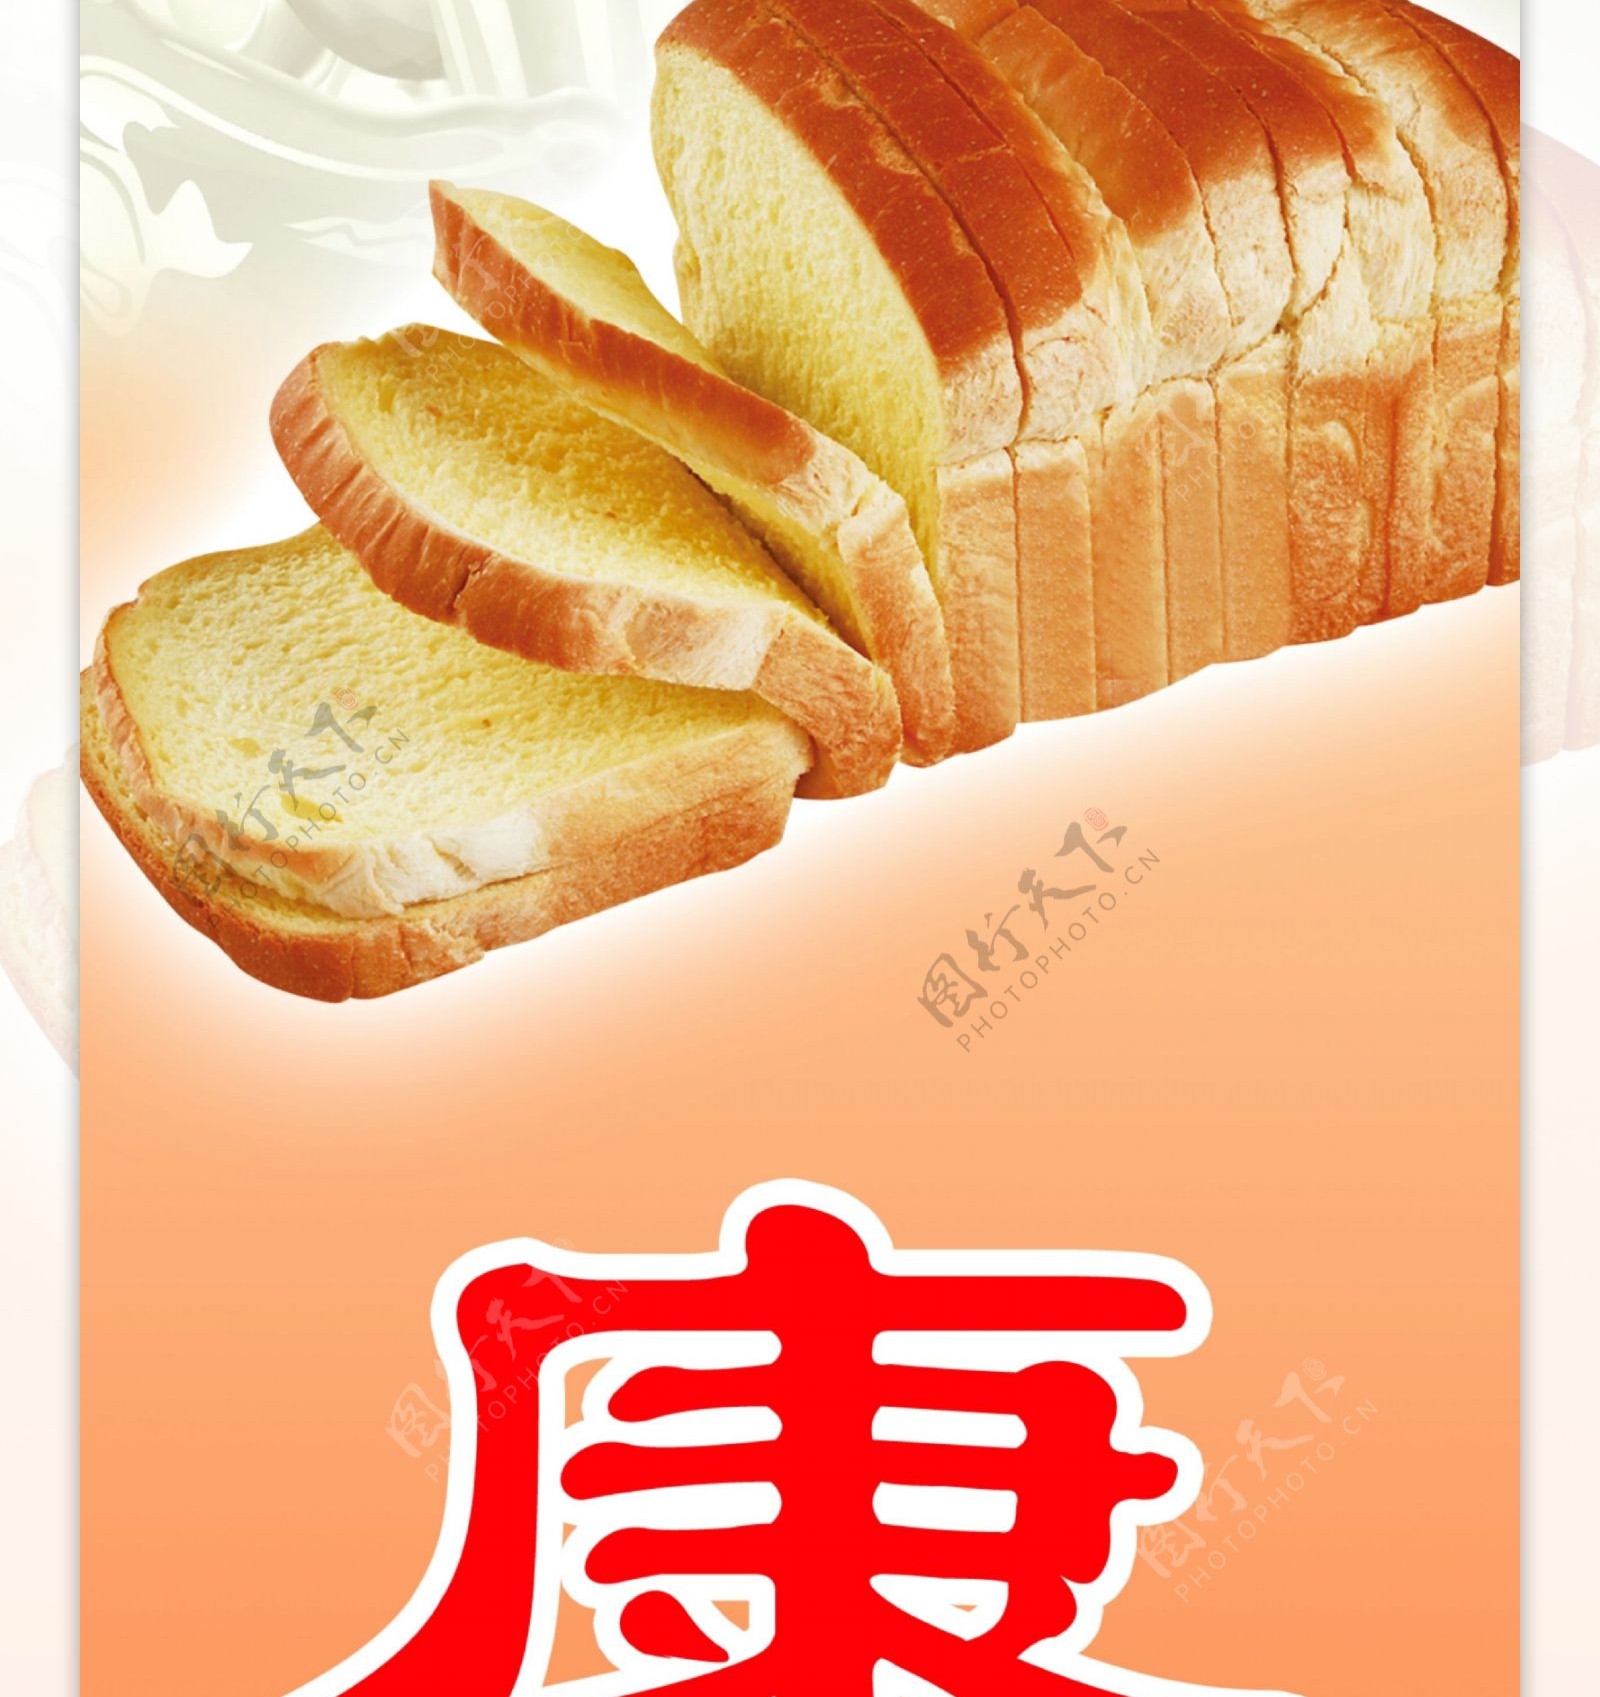 面包食品广告图片